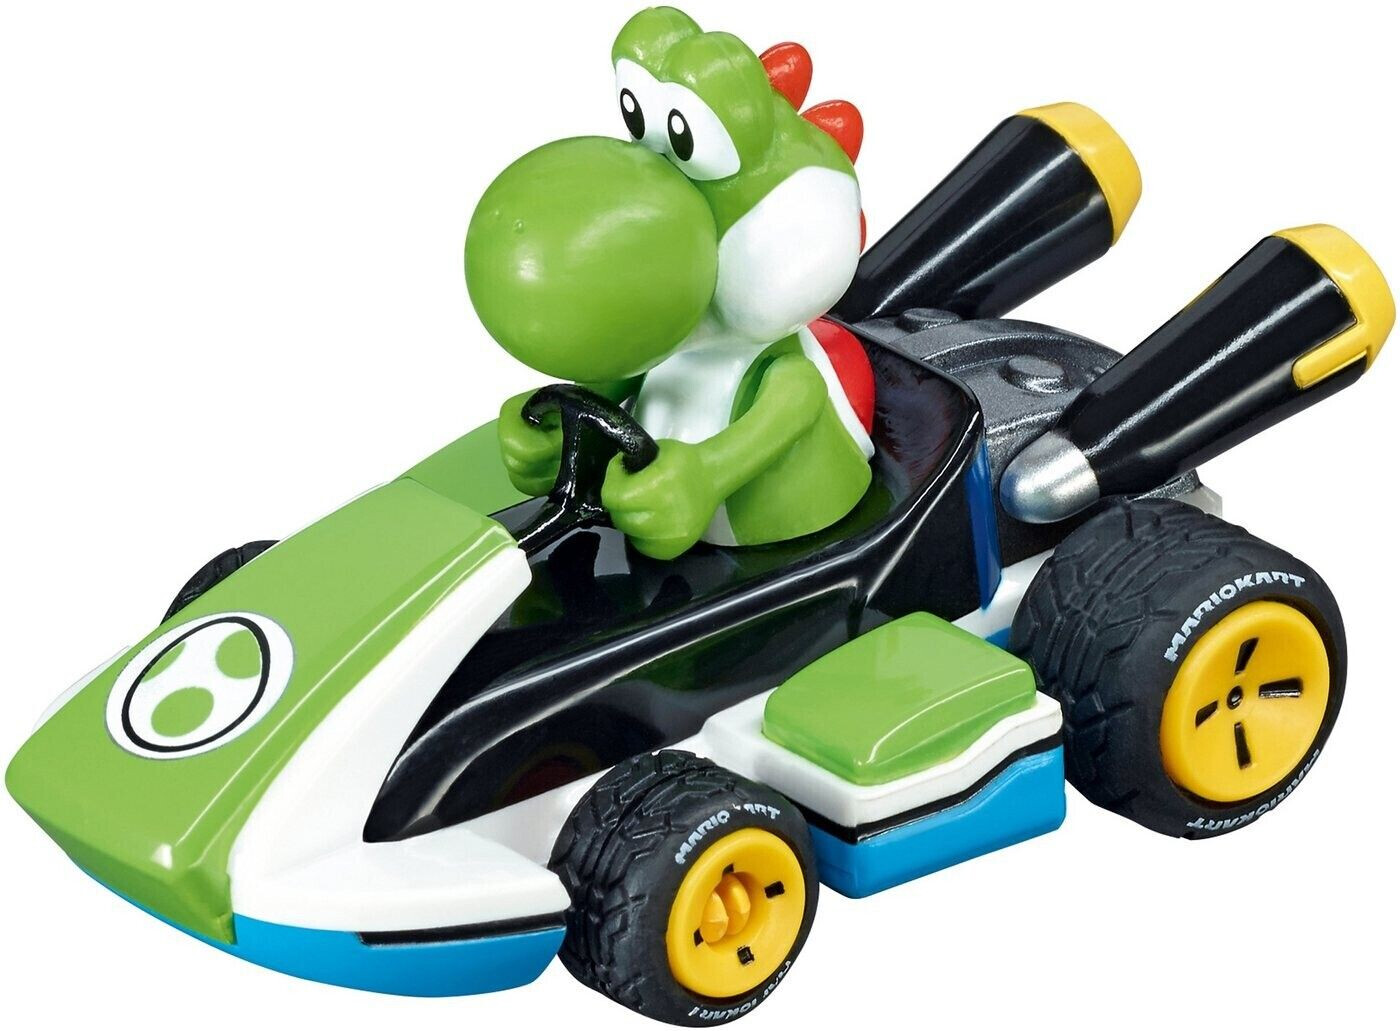 Voiture De Circuit - Mario Kart 8 - Top Prix 15€